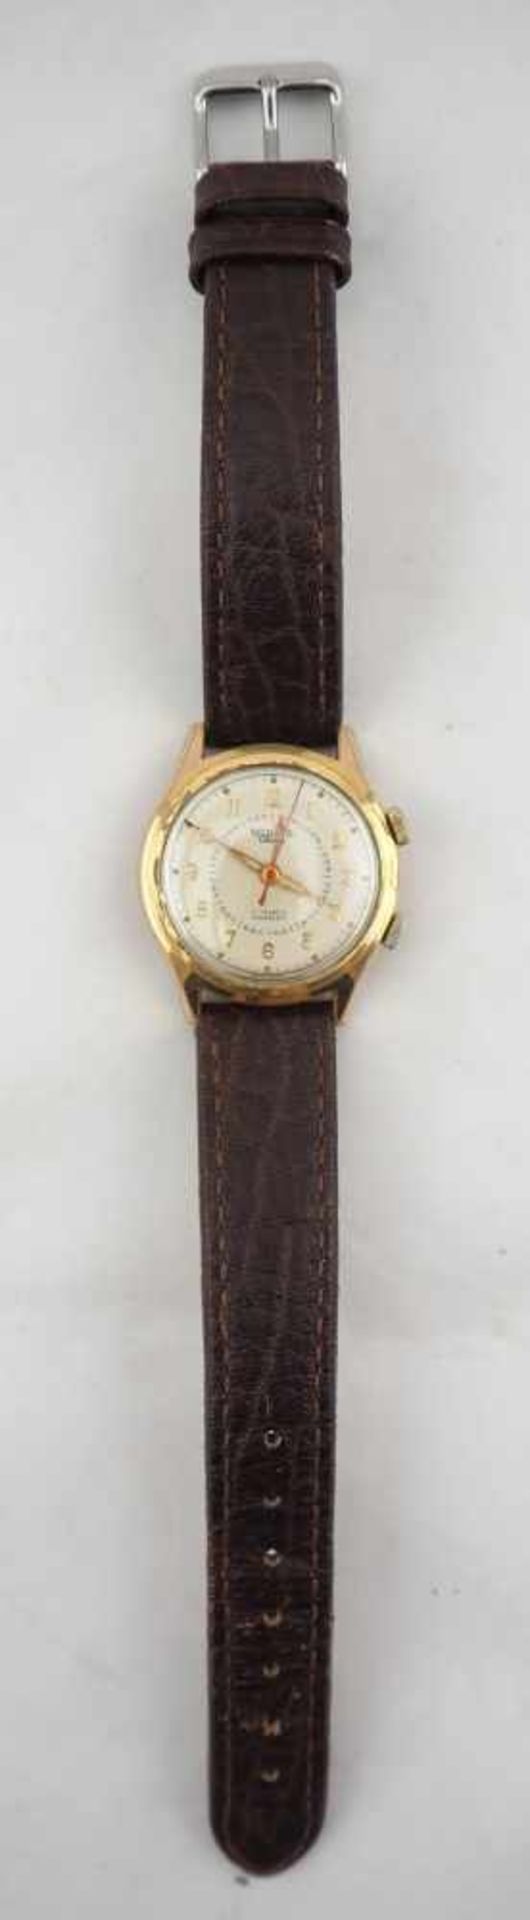 Herrenarmbanduhr mit Wecker, 50er JahreSeltene Uhr mit Wecker und Zentralsekunde. Gehäuse aus Stahl, - Bild 2 aus 3